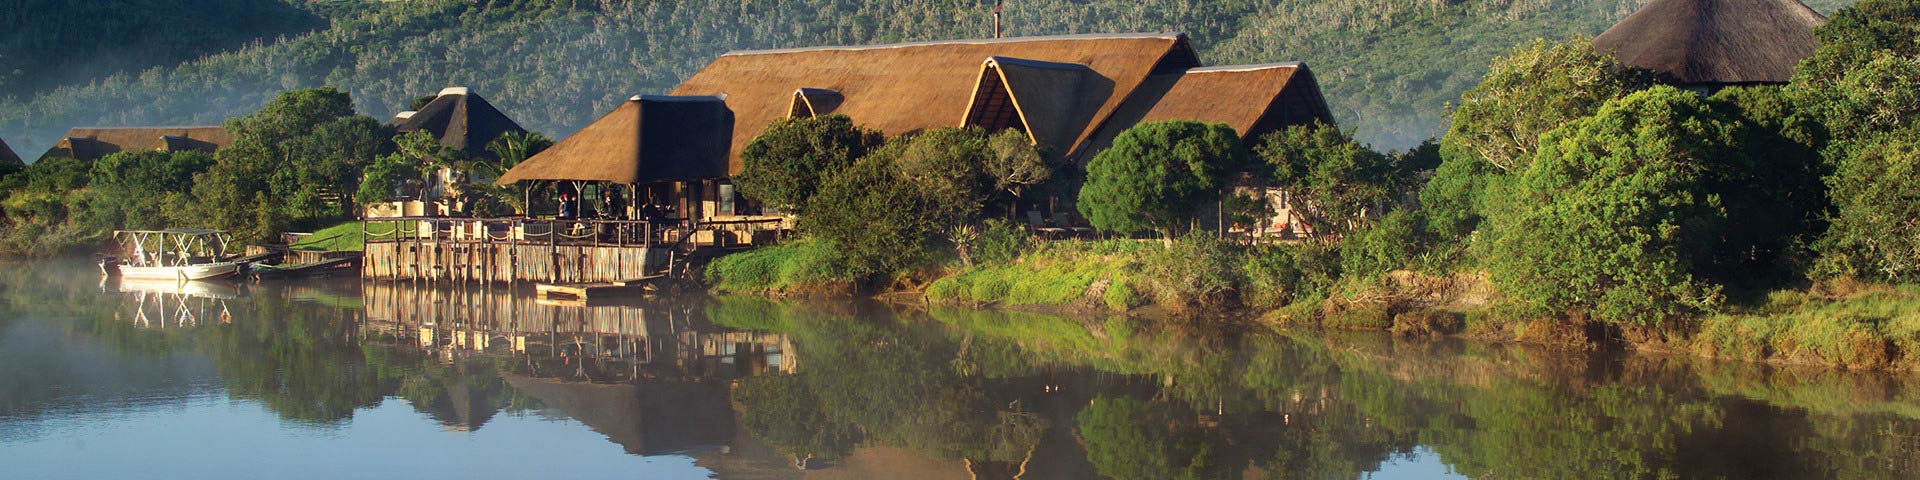 Kariega Game Reserve River African Safari Lodge